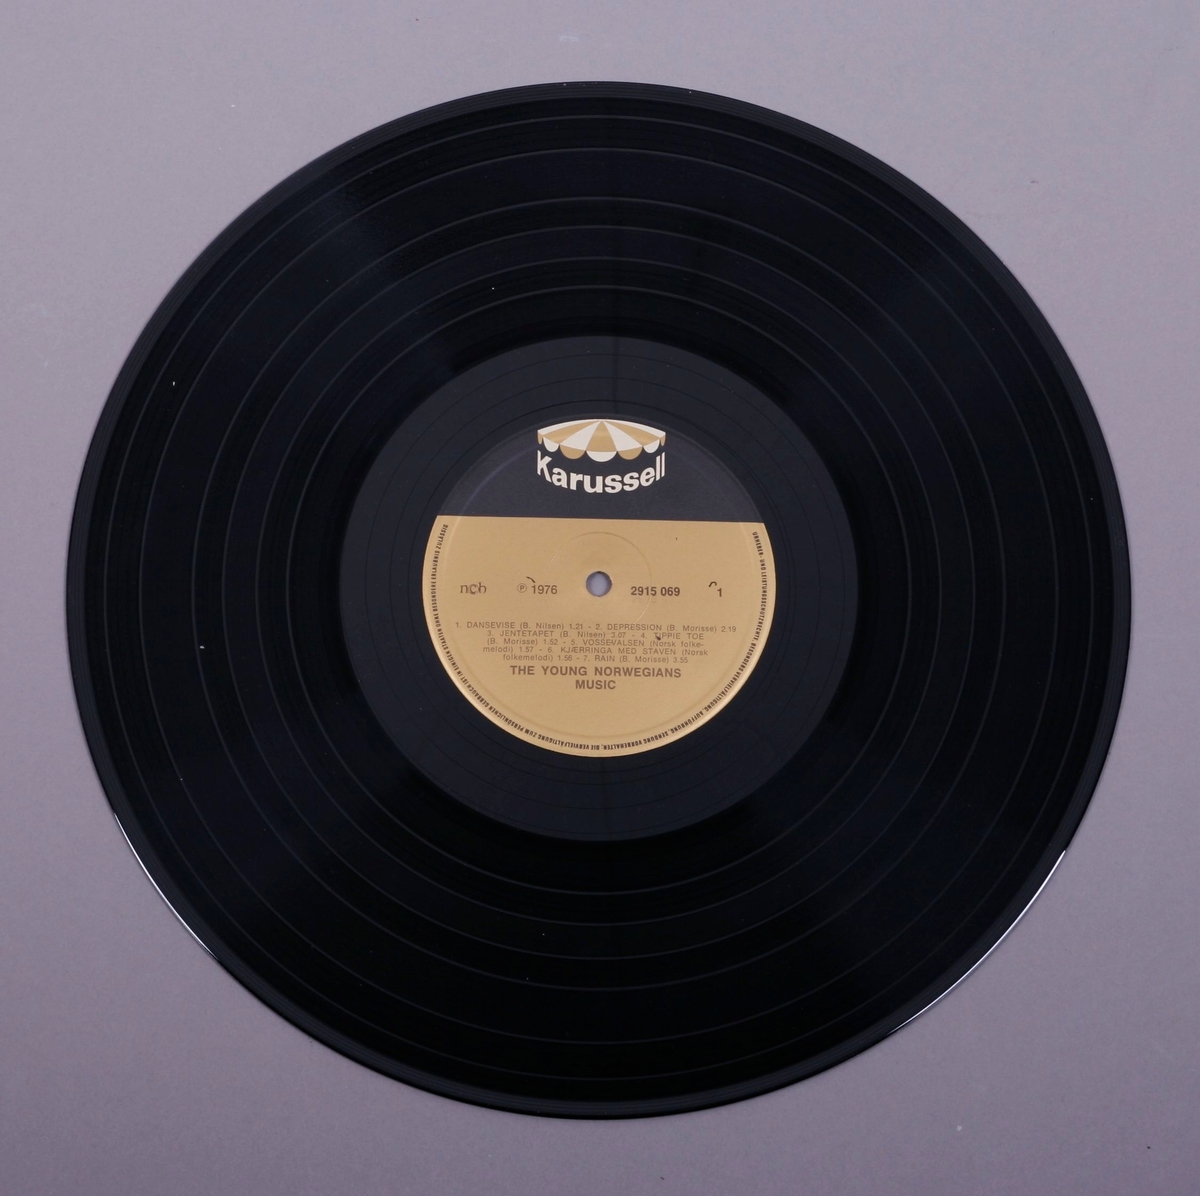 Grammofonplate i svart vinyl og plateomslag i papp. Plata ligger i en papirlomme som har bilder av andre utgivelser.